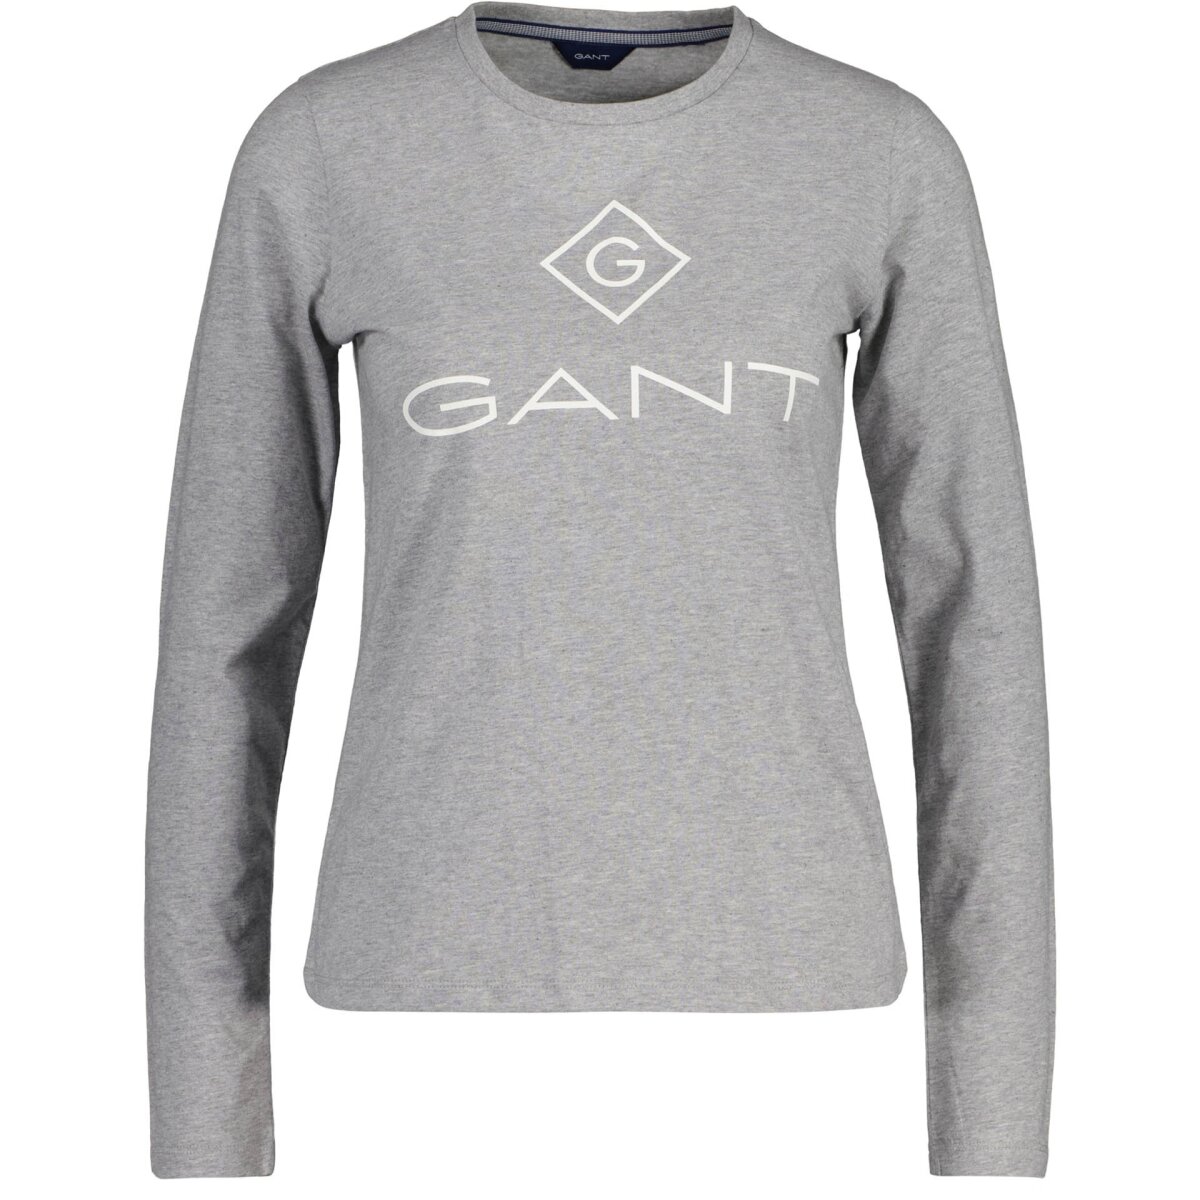 GANT Damen Langarm T-Shirt - LOCK UP, 49,95 €